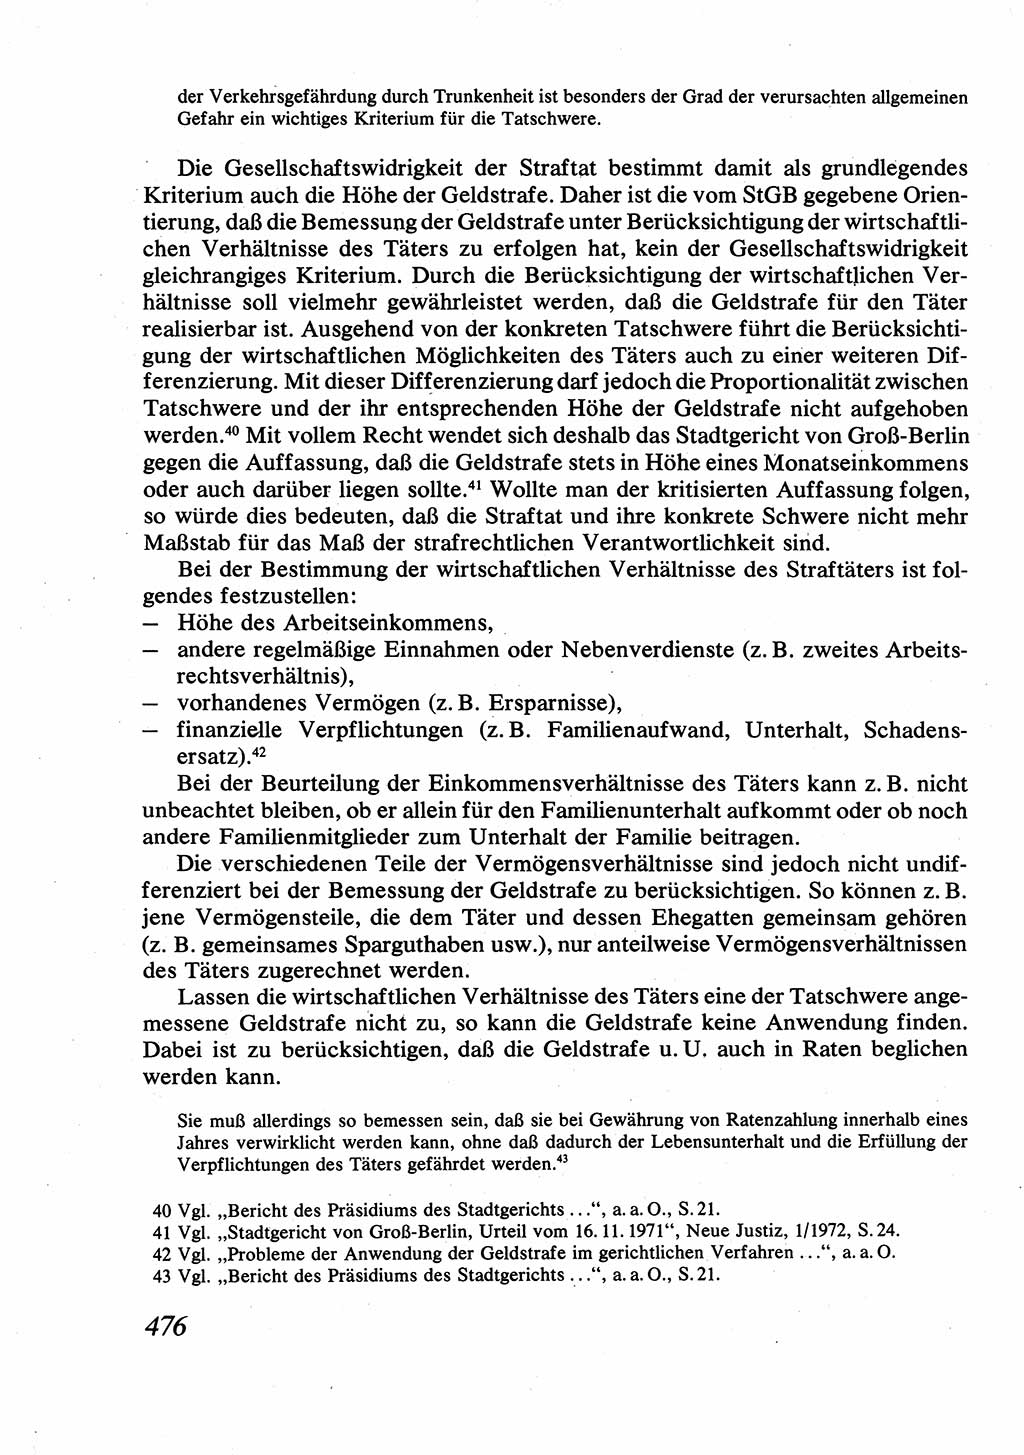 Strafrecht [Deutsche Demokratische Republik (DDR)], Allgemeiner Teil, Lehrbuch 1976, Seite 476 (Strafr. DDR AT Lb. 1976, S. 476)